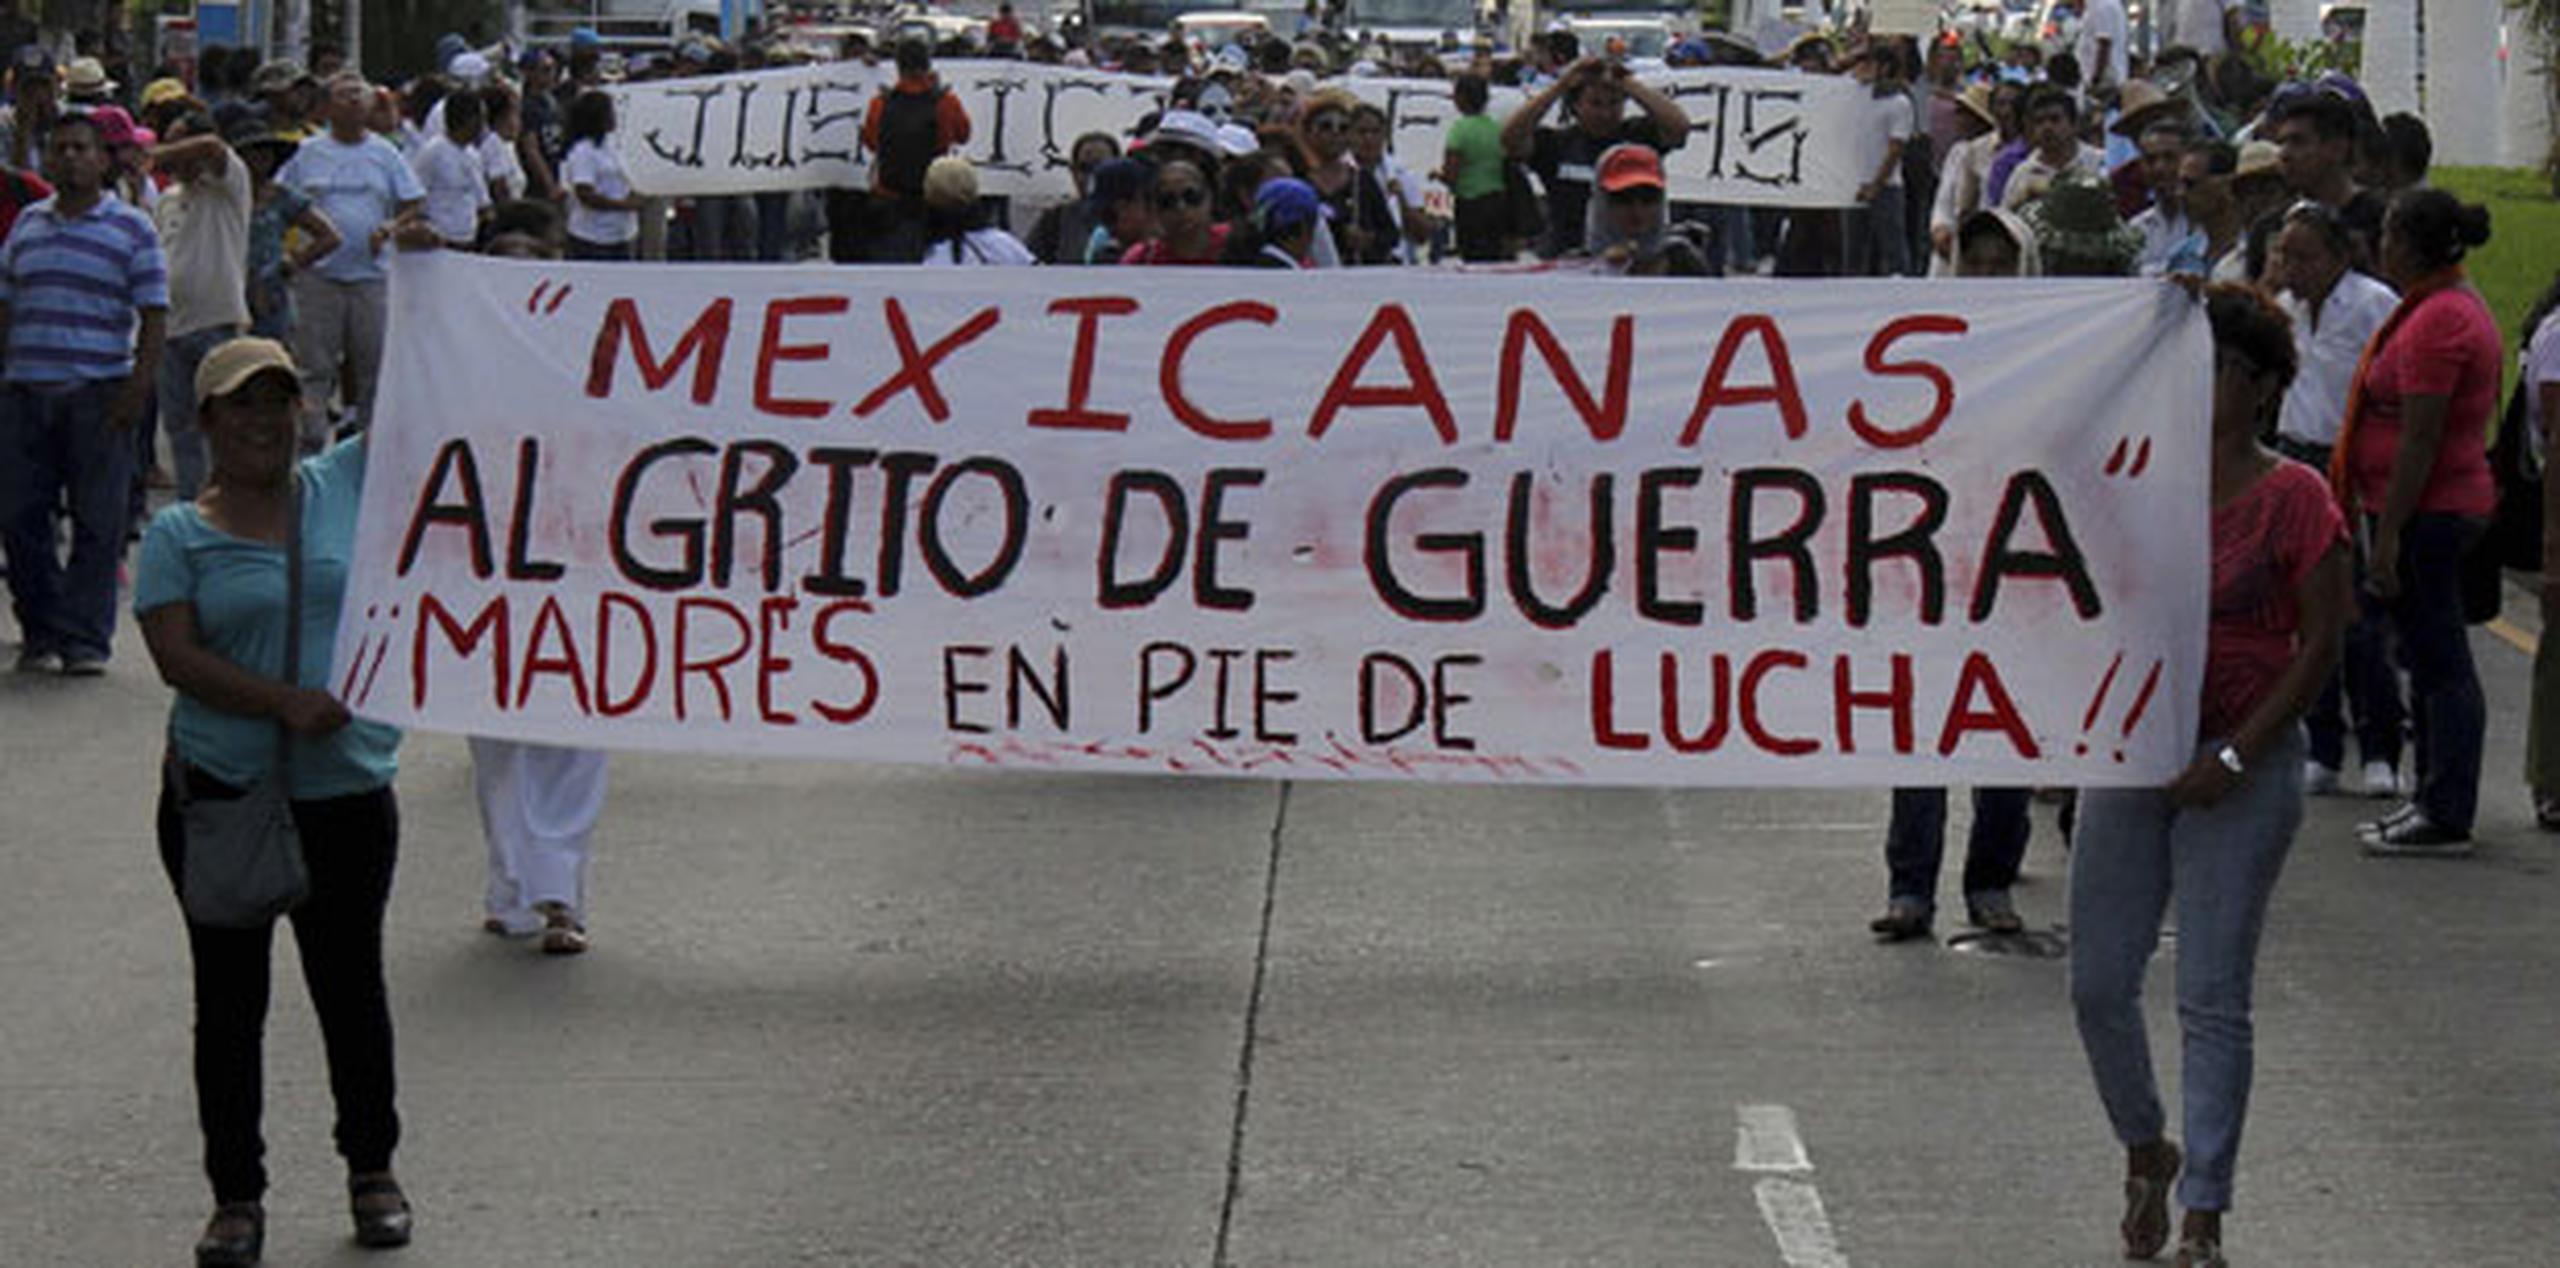 Manifestantes han bloqueado las carreteras que llevan a Acapulco, han secuestrado autobuses y bloquearon el aeropuerto de la ciudad para reclamar que el gobierno encuentre a los estudiantes que desaparecieron el pasado 26 de septiembre en la cercana ciudad de Iguala. (Archivo)